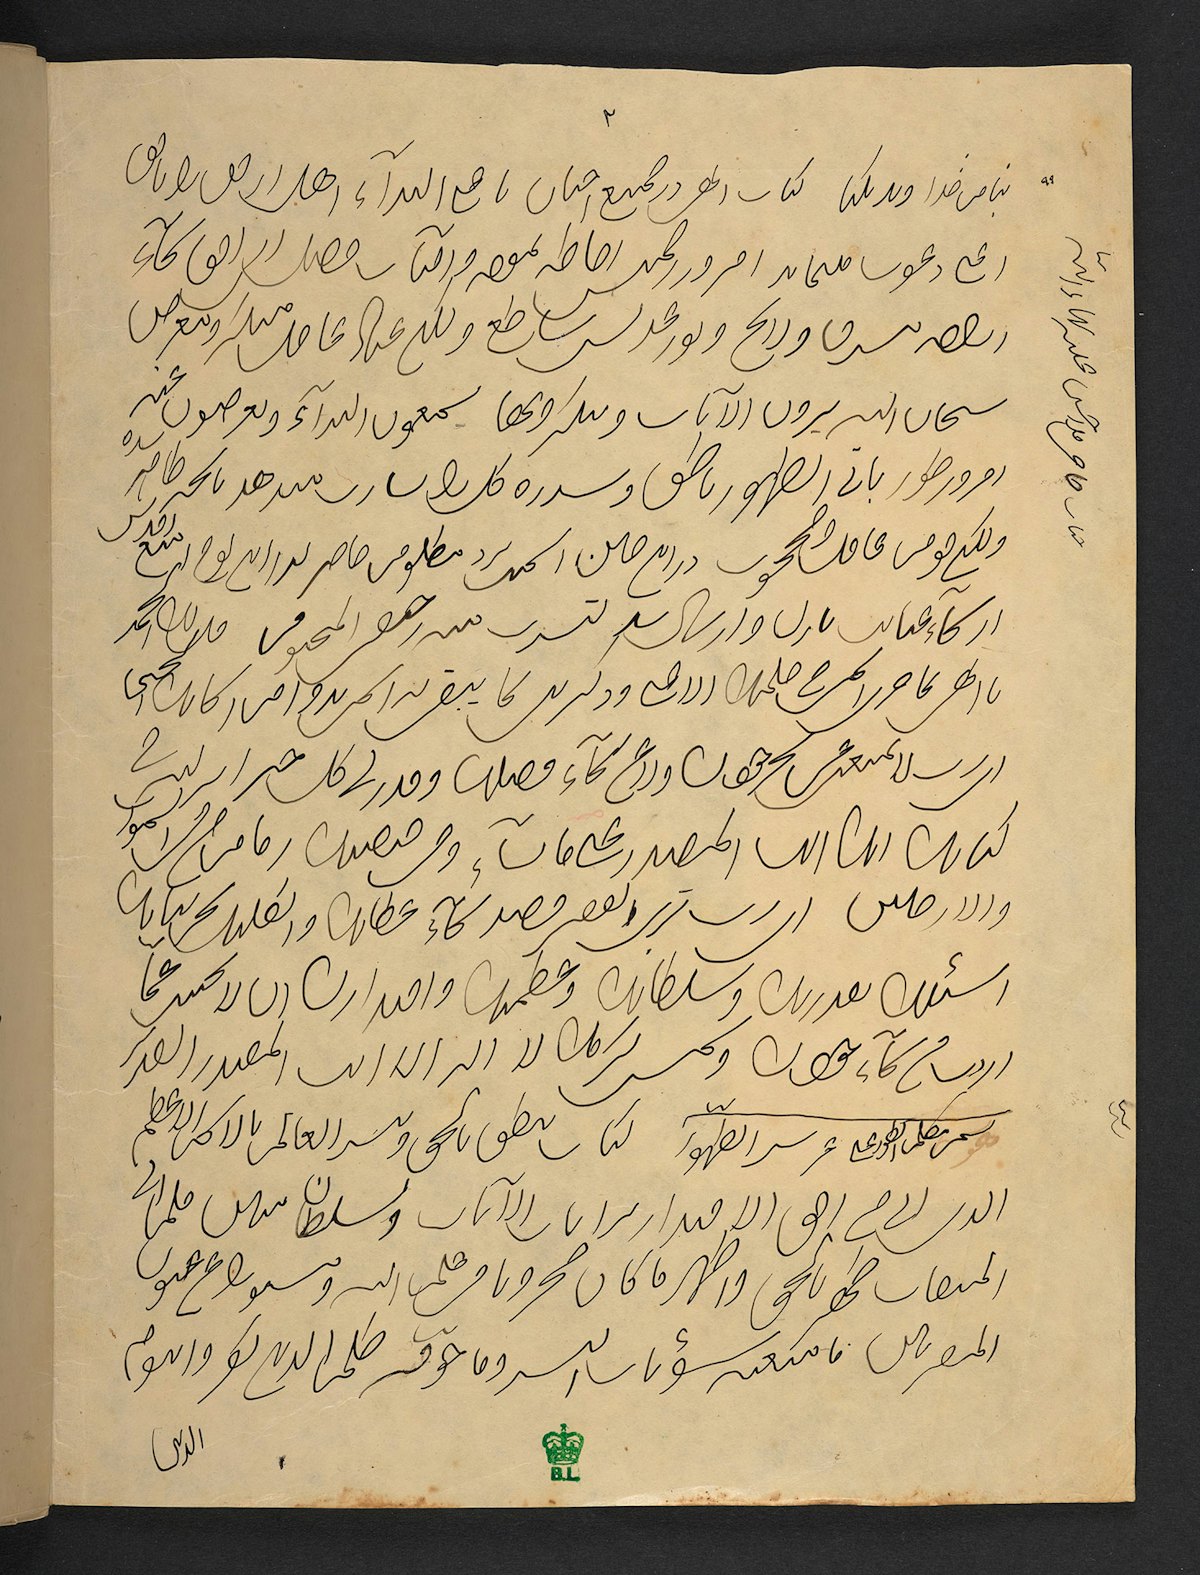 Ce manuscrit, exposé à la British Library, est un exemple d’écriture de la Révélation, forme particulière de transcription par laquelle les secrétaires de Bahá'u'lláh consignaient rapidement ses paroles pendant qu’elles étaient révélées.